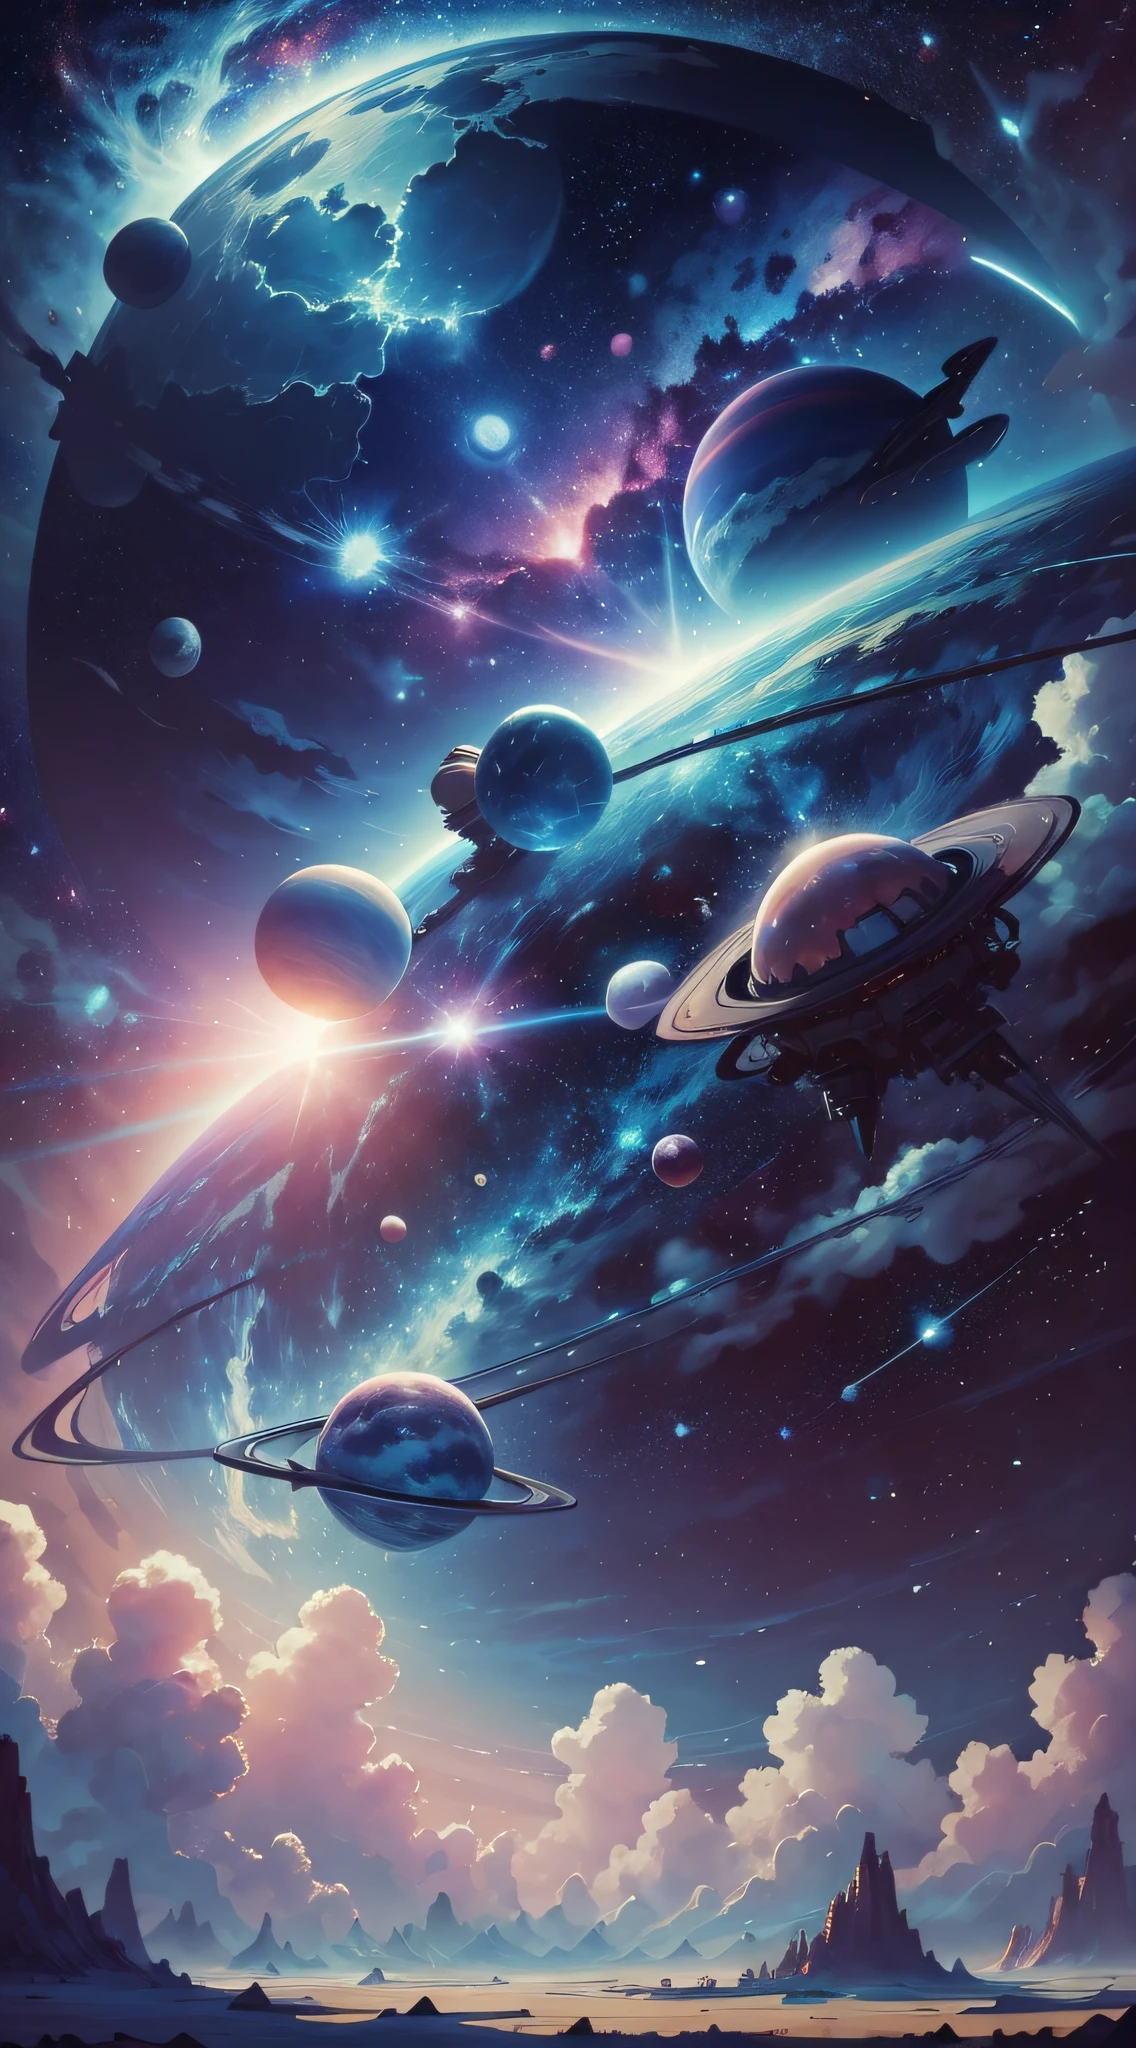 太空中所有的行星都是蓝色和粉红色的，背景是明亮的白色星星，这是宫崎骏的风格, ——21:9 --自动 --s2